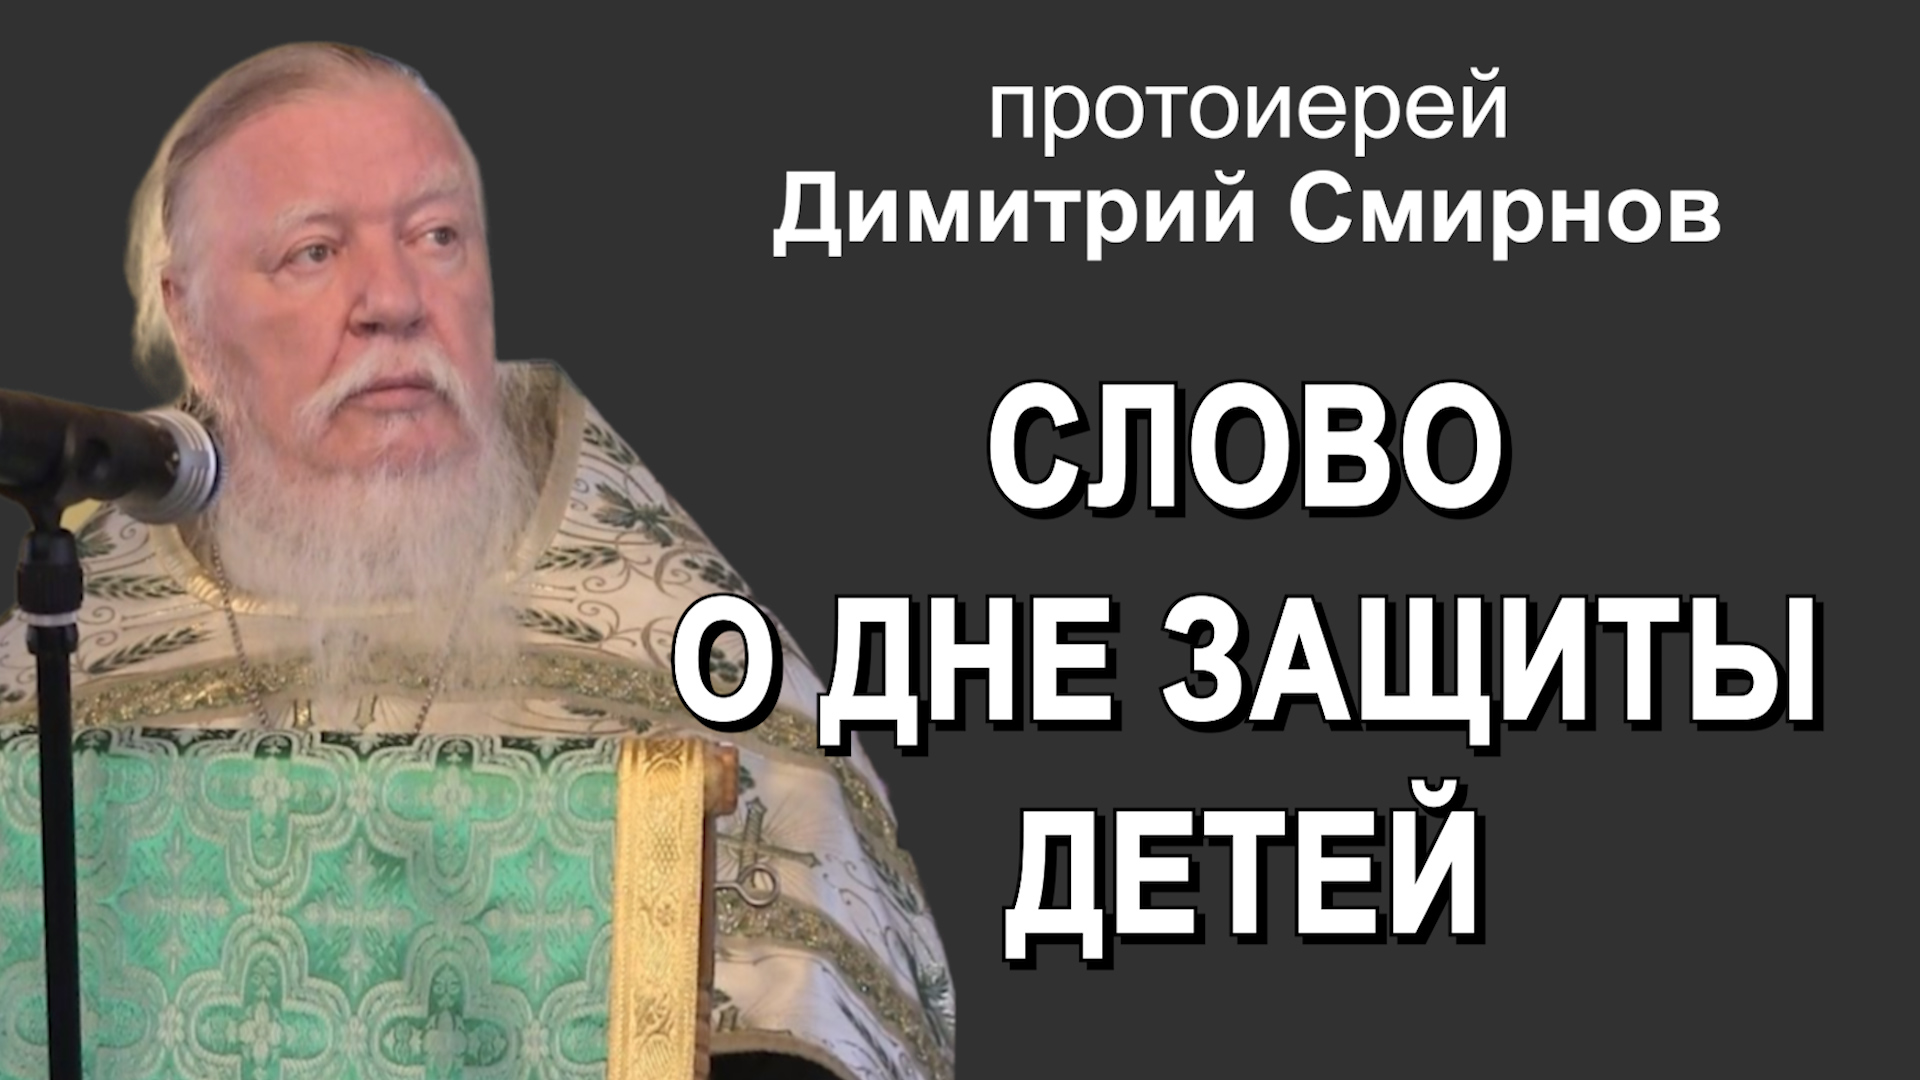 Слово о дне защиты детей (2015.05.31). Протоиерей Димитрий Смирнов